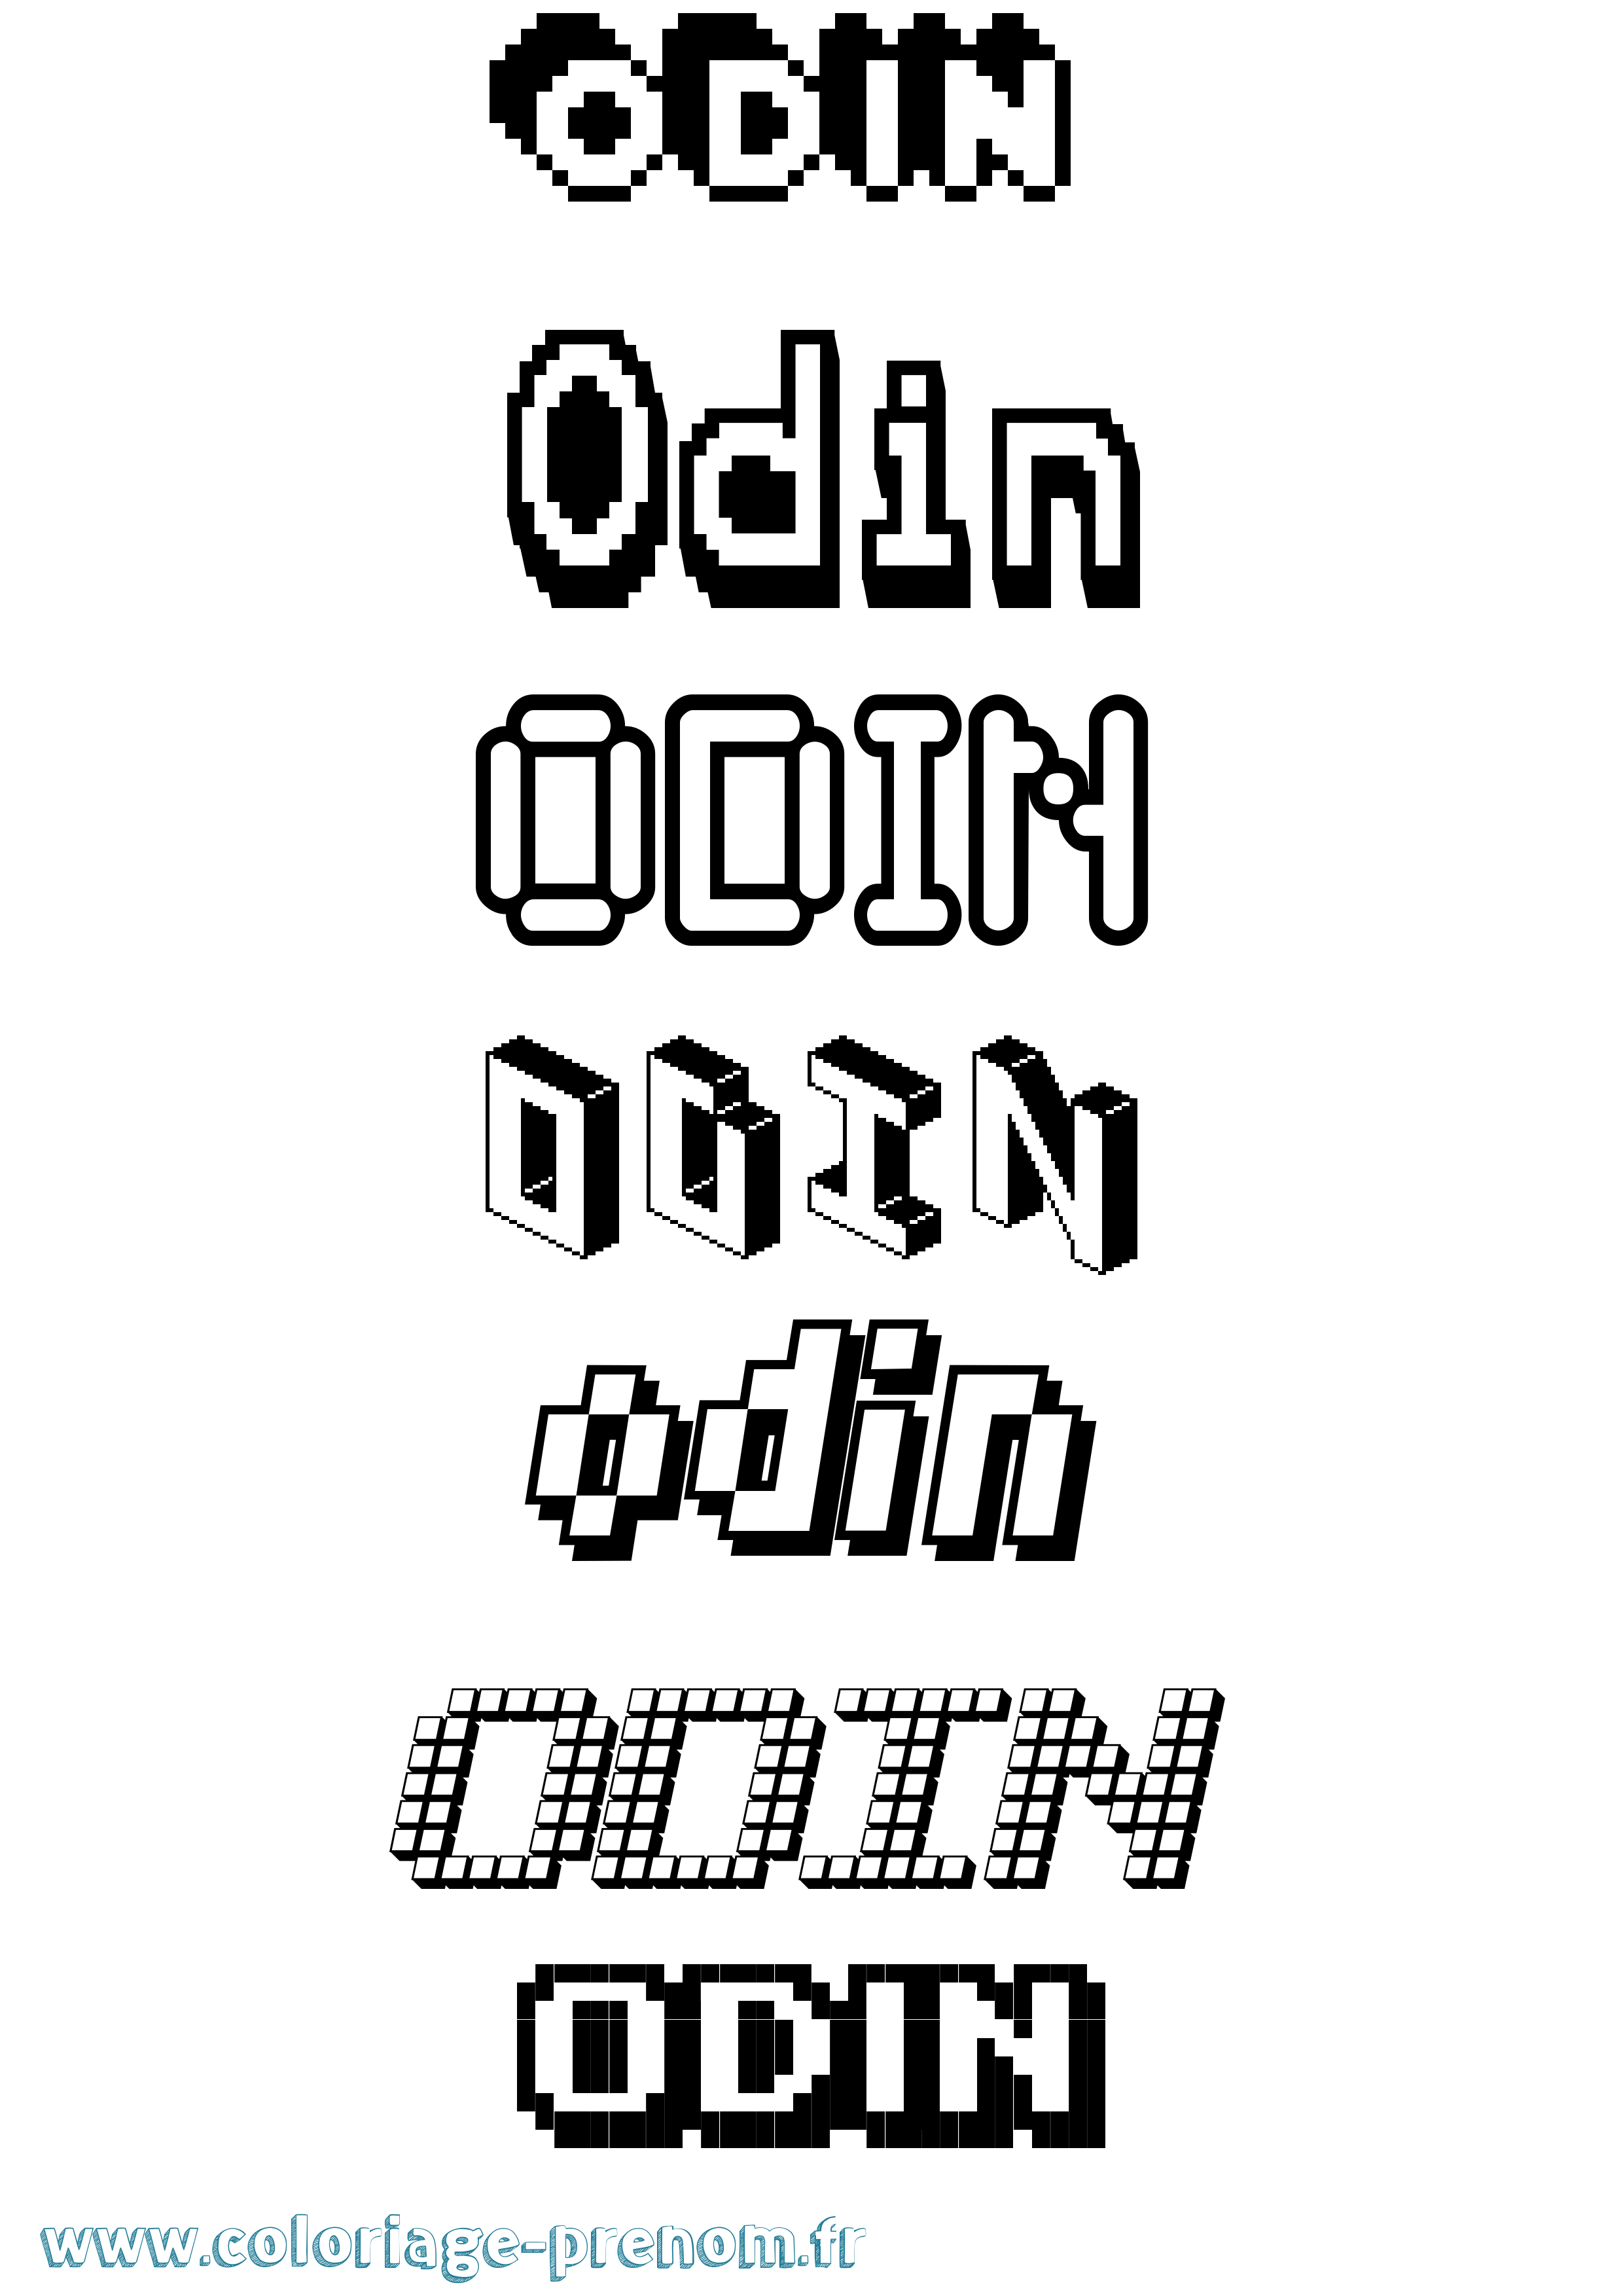 Coloriage prénom Odin Pixel